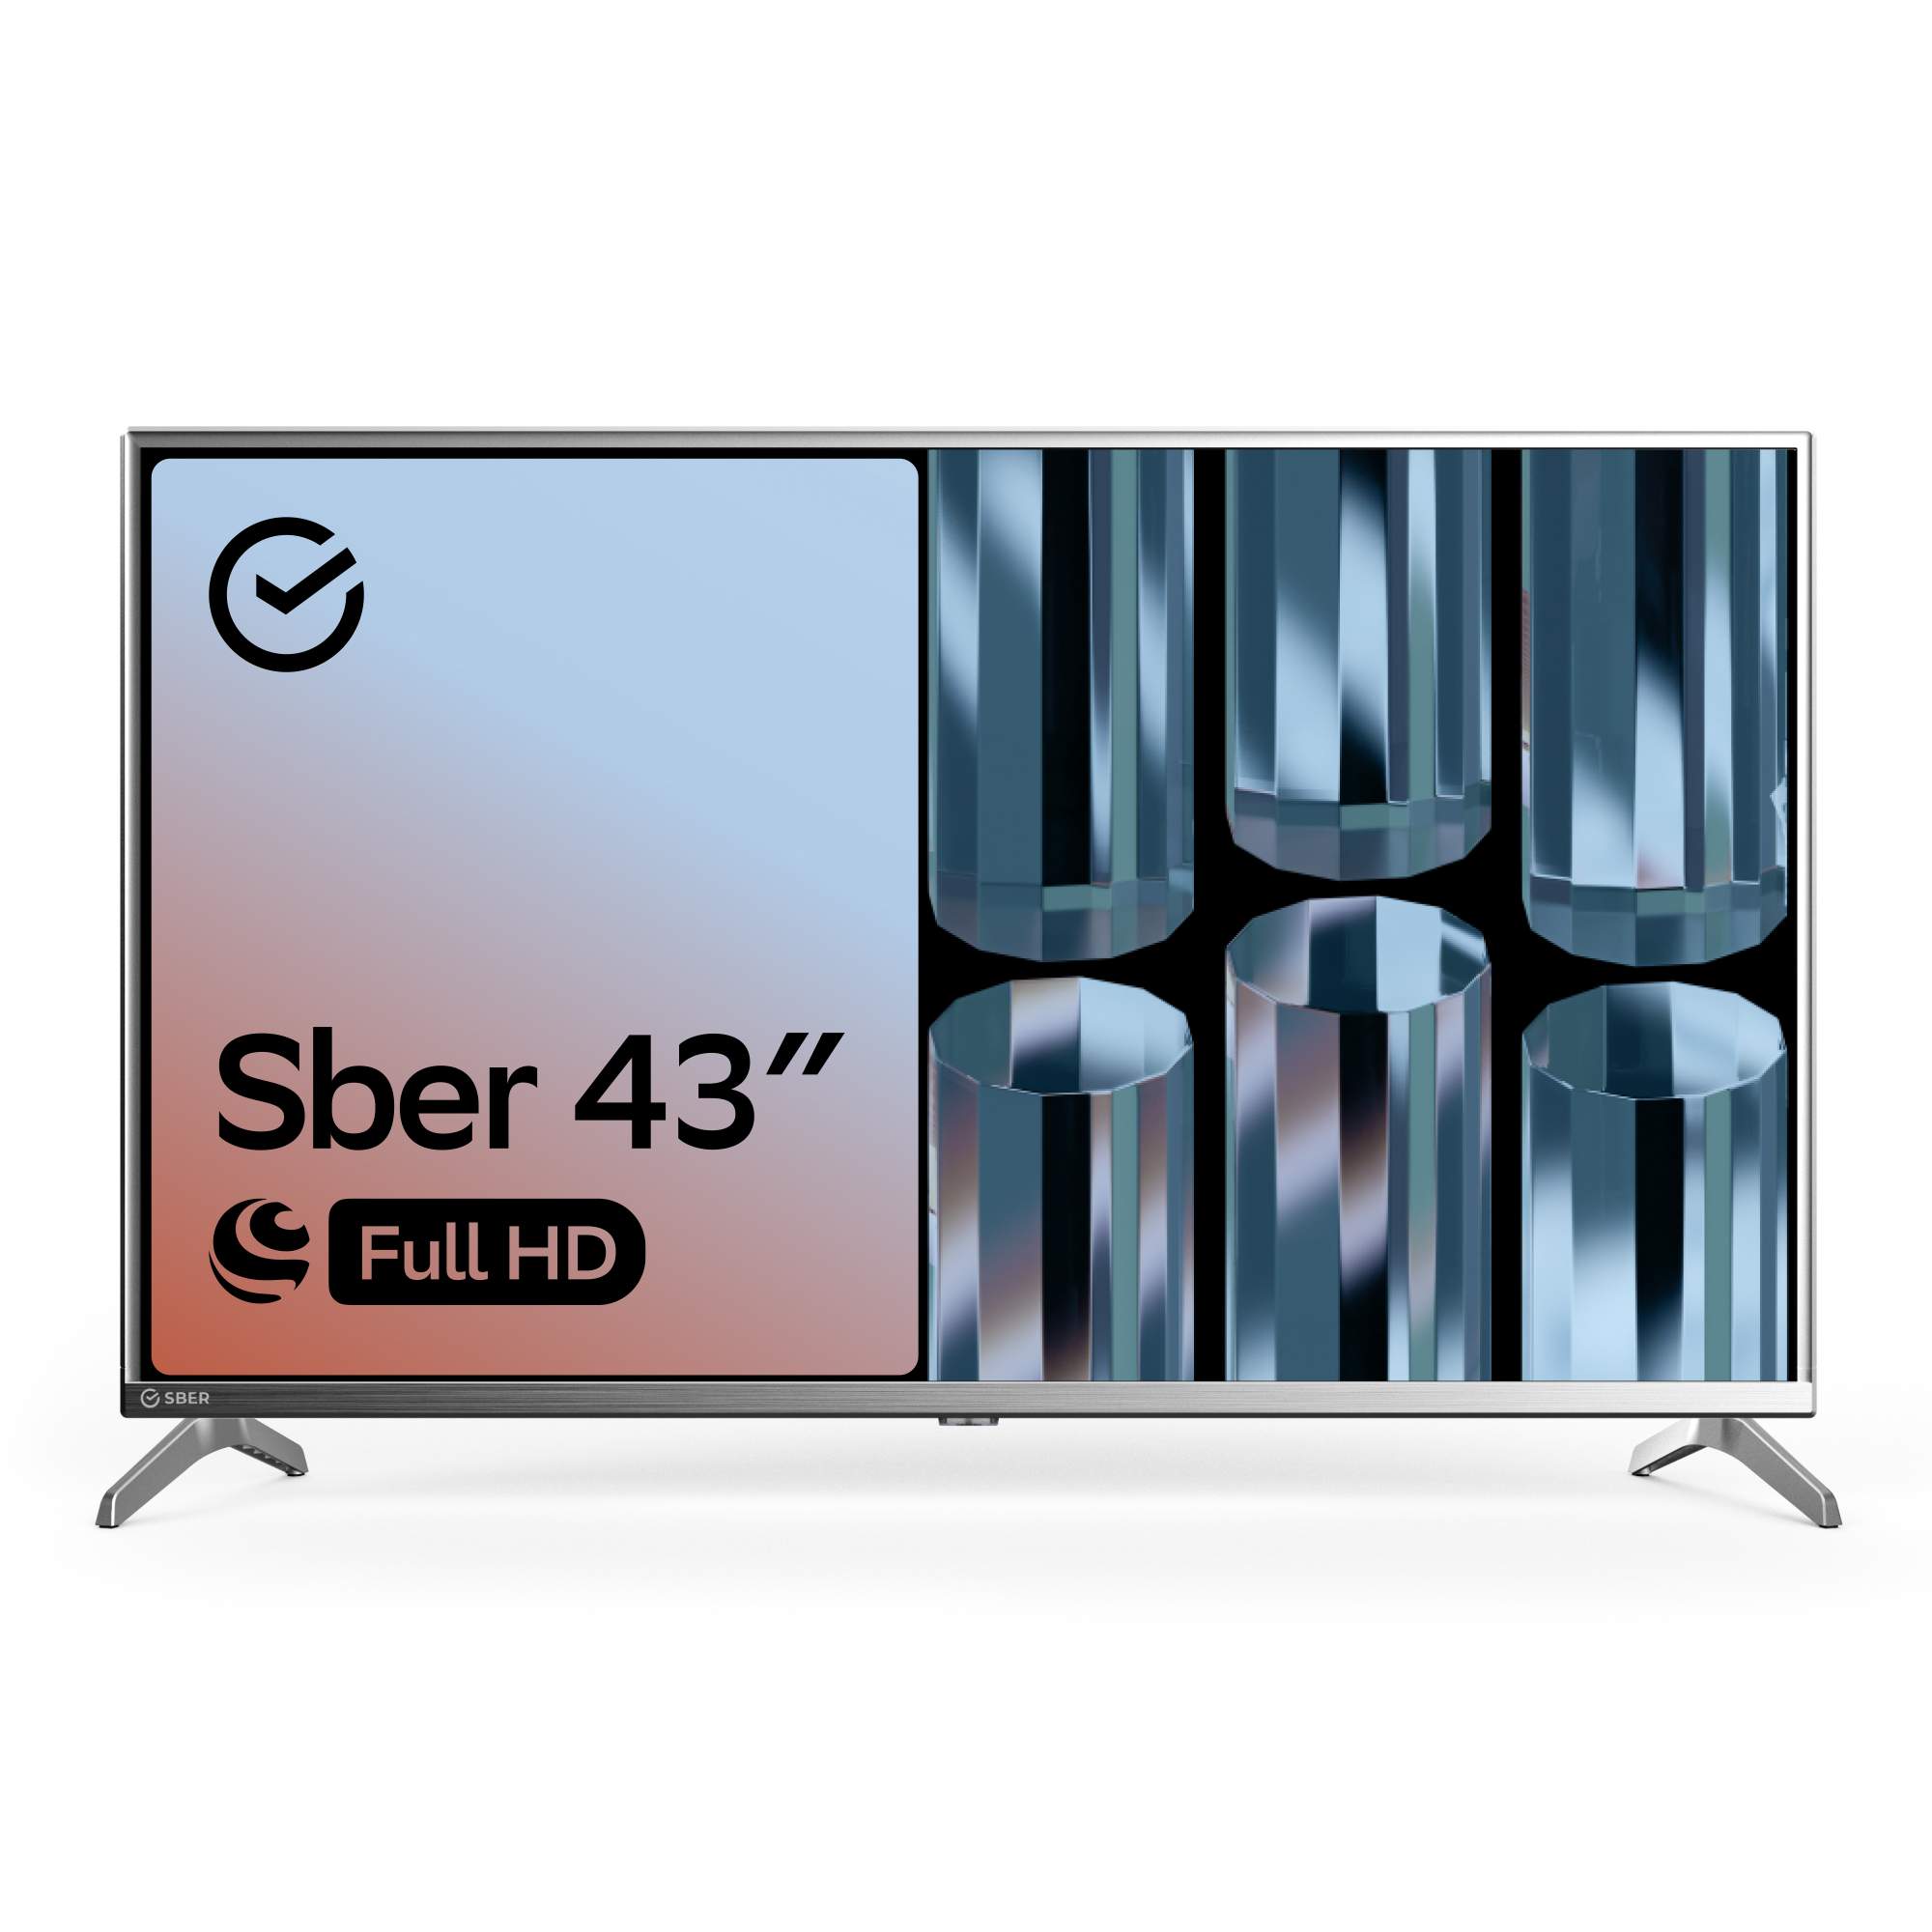 Телевизор Sber SDX-43F2012S, 43"(109 см), FHD, купить в Москве, цены в интернет-магазинах на Мегамаркет